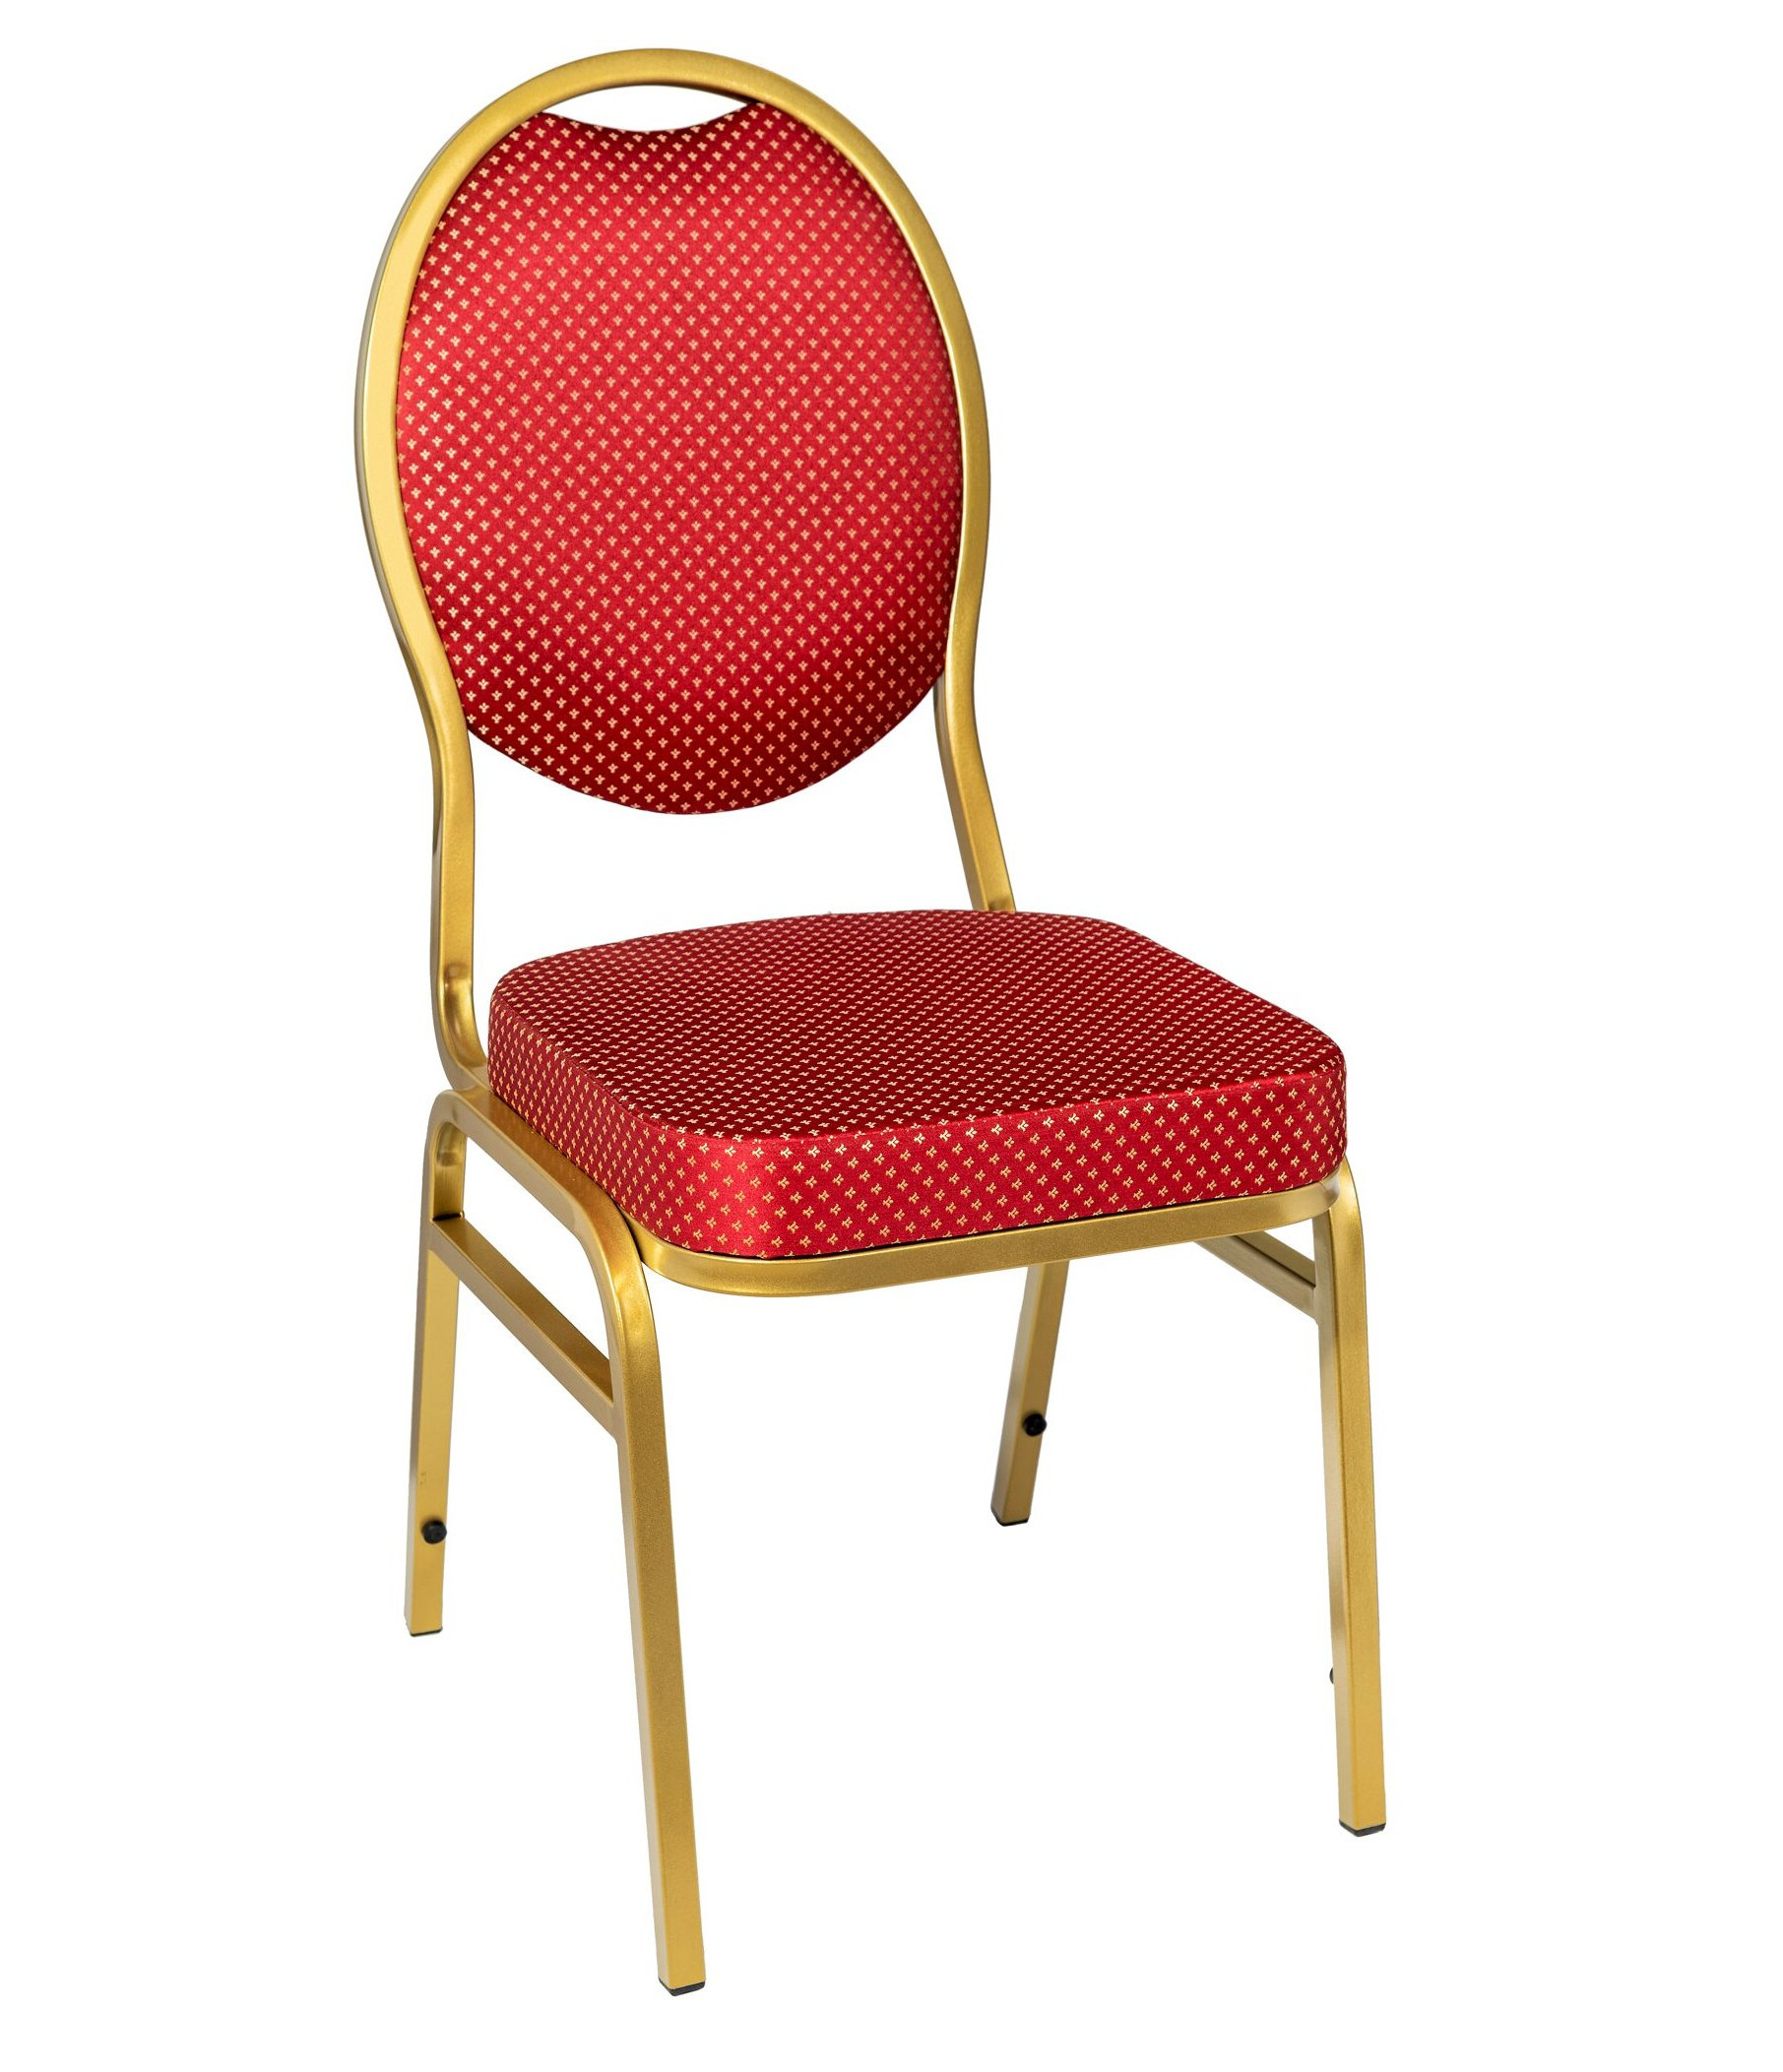 Банкетный стул Квин 20мм золотой, красная корона